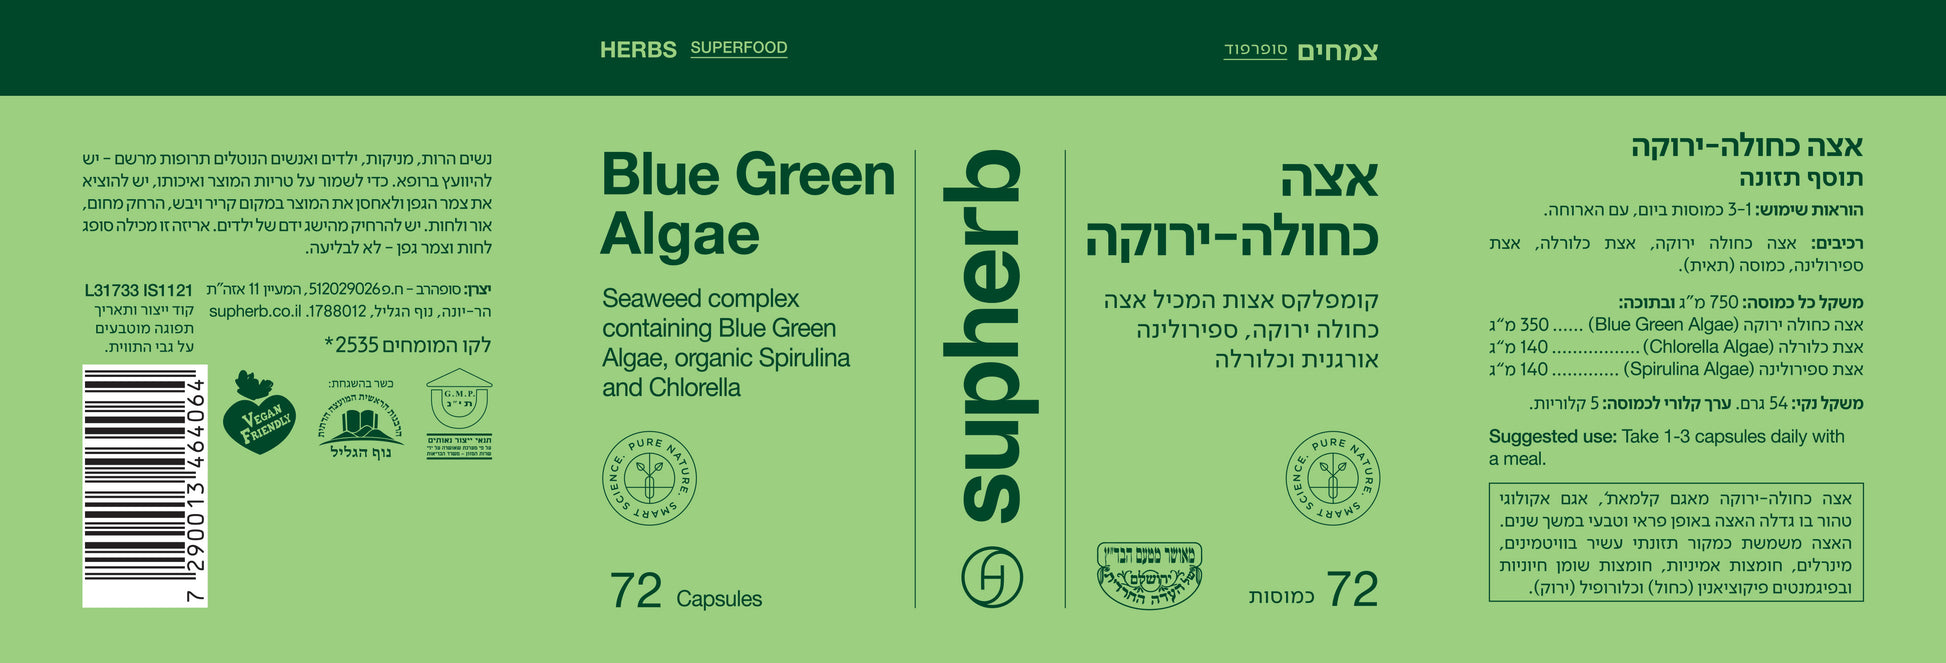 Supherb blue green algae 72 capsules